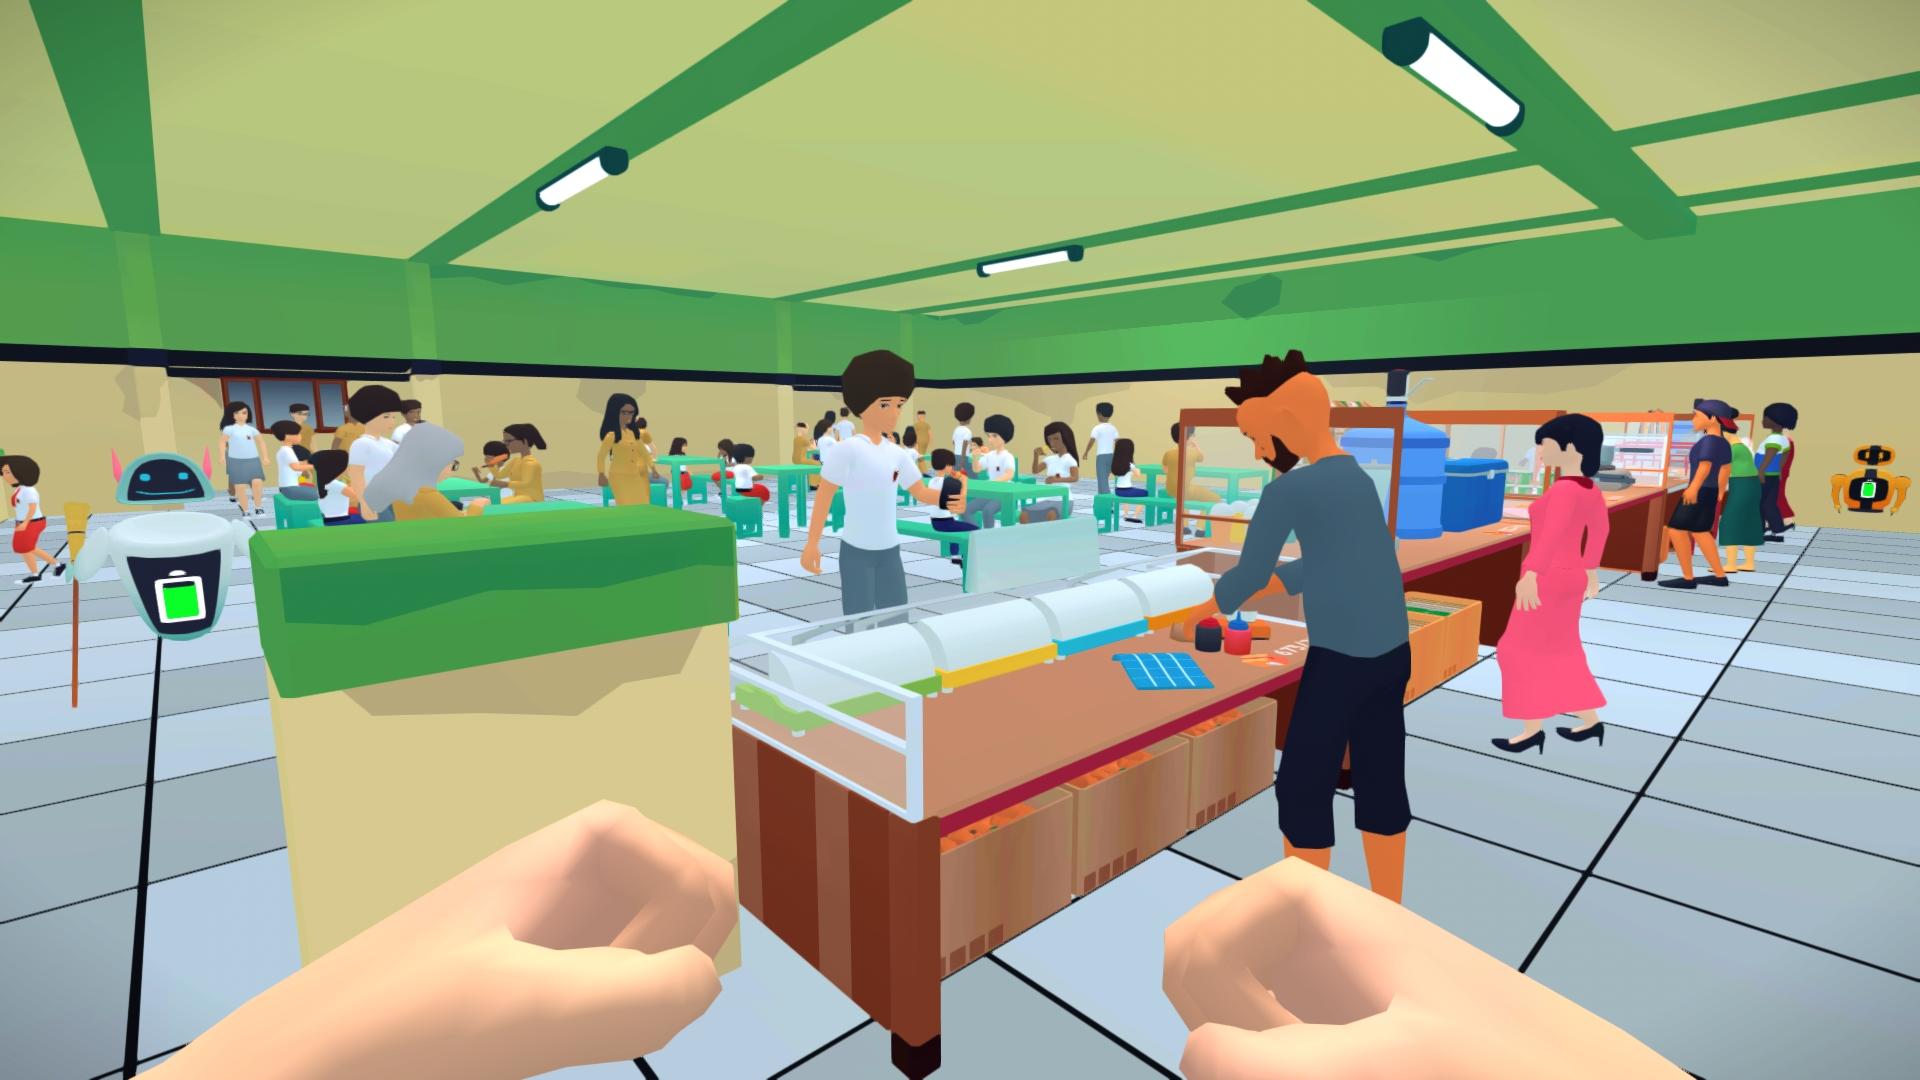 Screenshot 1 of Simulador de cafetería escolar 6.4.1